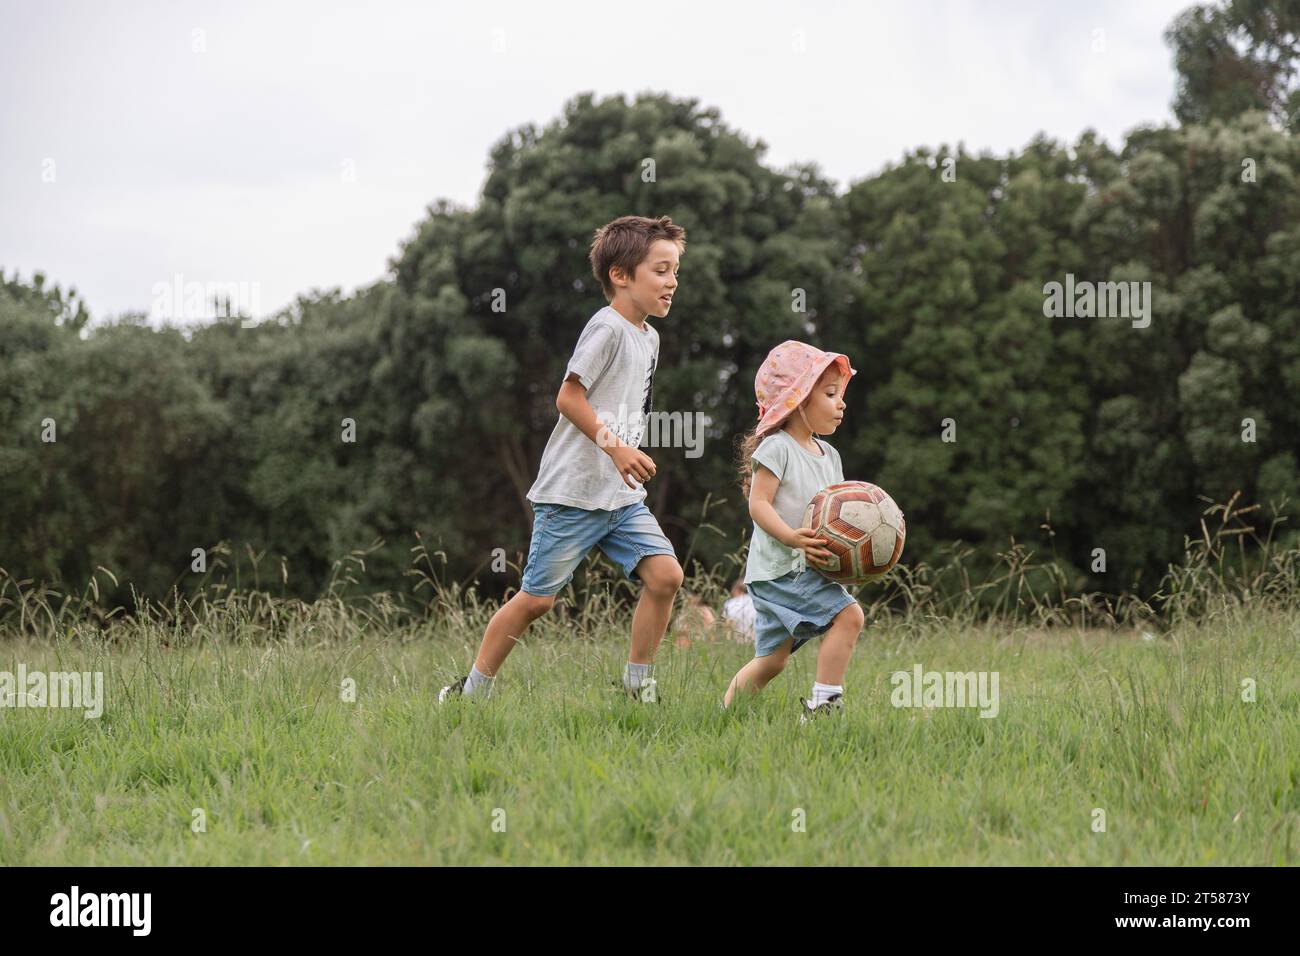 Deux enfants jouant avec un ballon dans le parc verdoyant. Concept d'enfance heureuse au contact de la nature, mode de vie sain. Banque D'Images